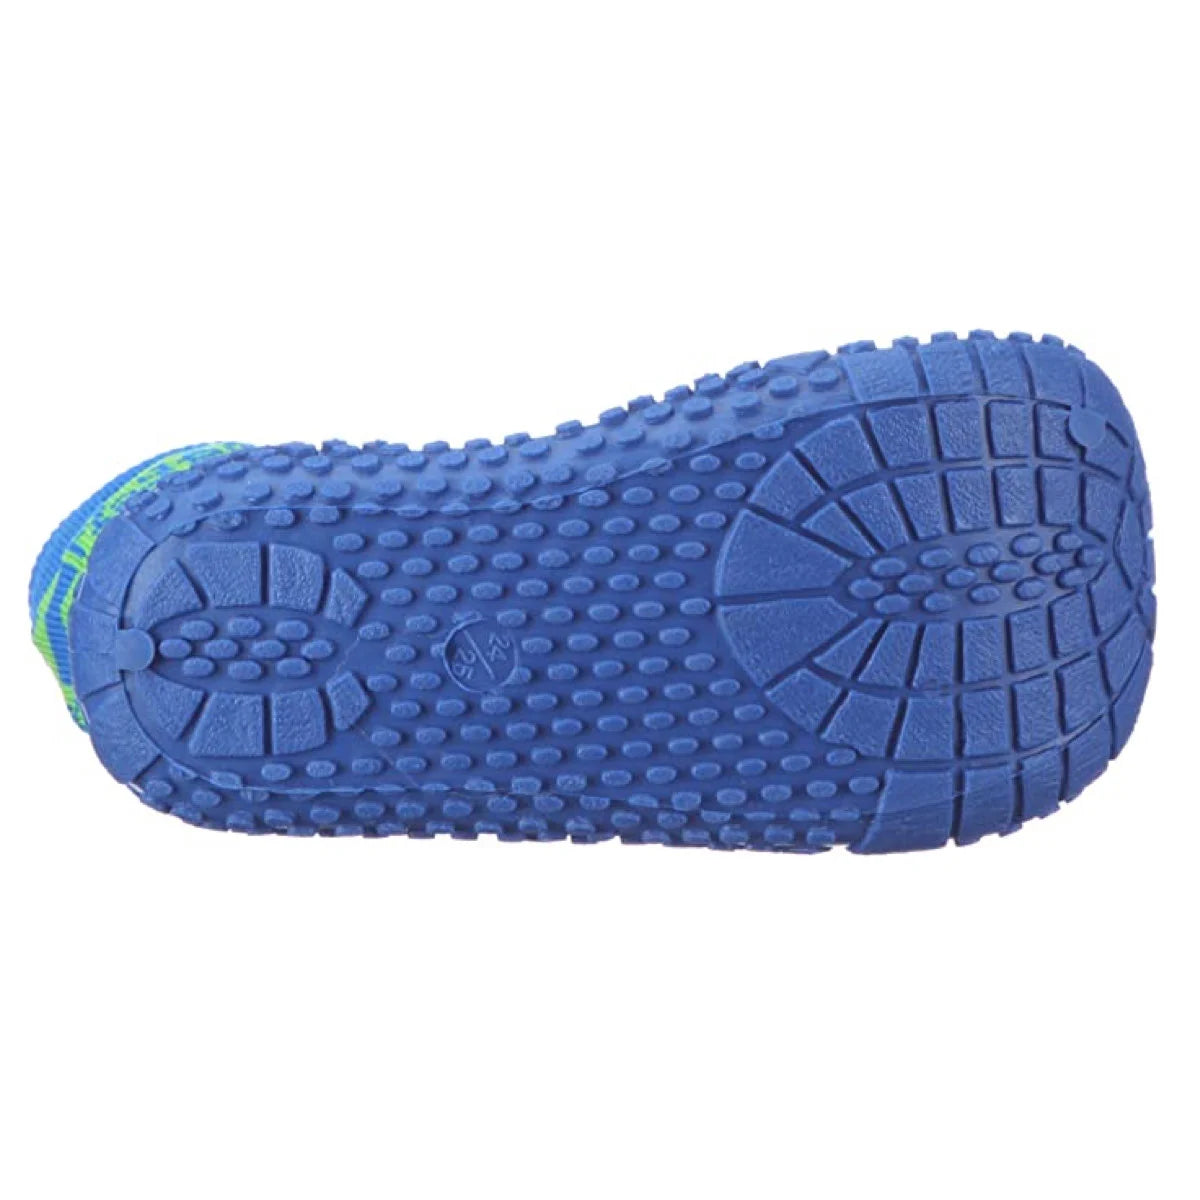 Rutschfeste Sohle der Aqua-Socken mit grün-blauen Streifen